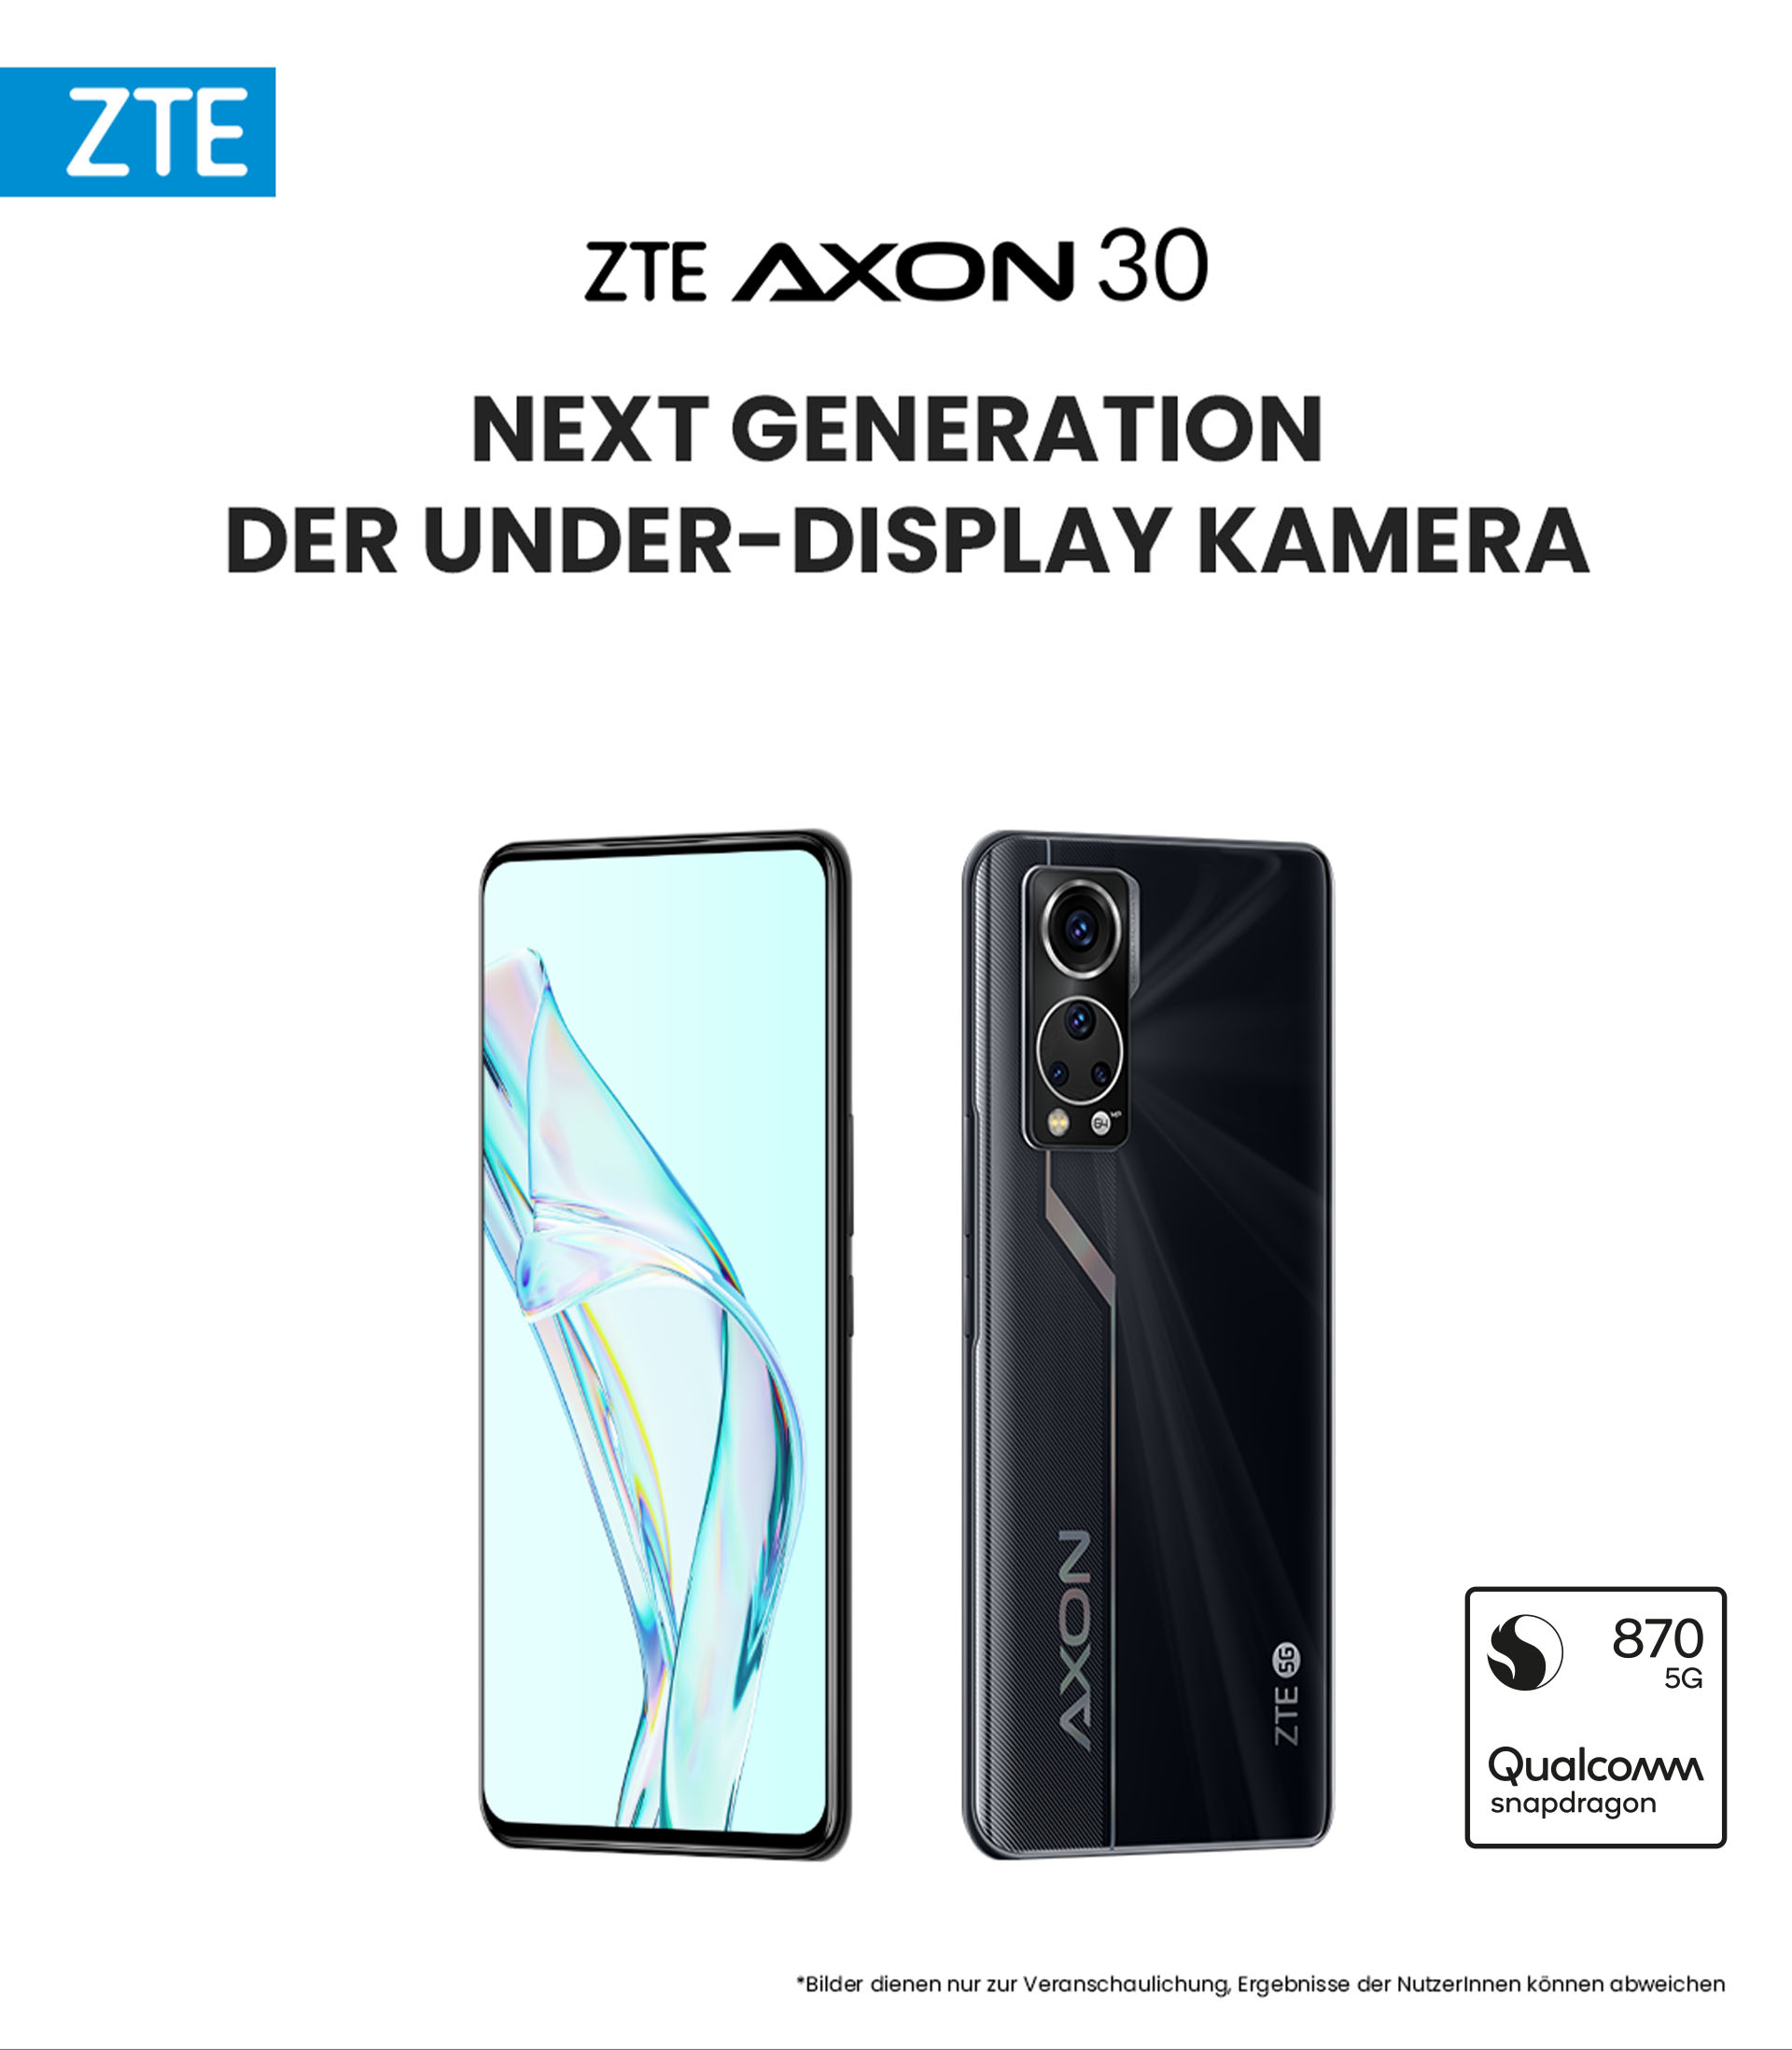 ZTE Axon 30 Next Generation der Under-Display Kamera mit Qualcomm Snapdragon 870